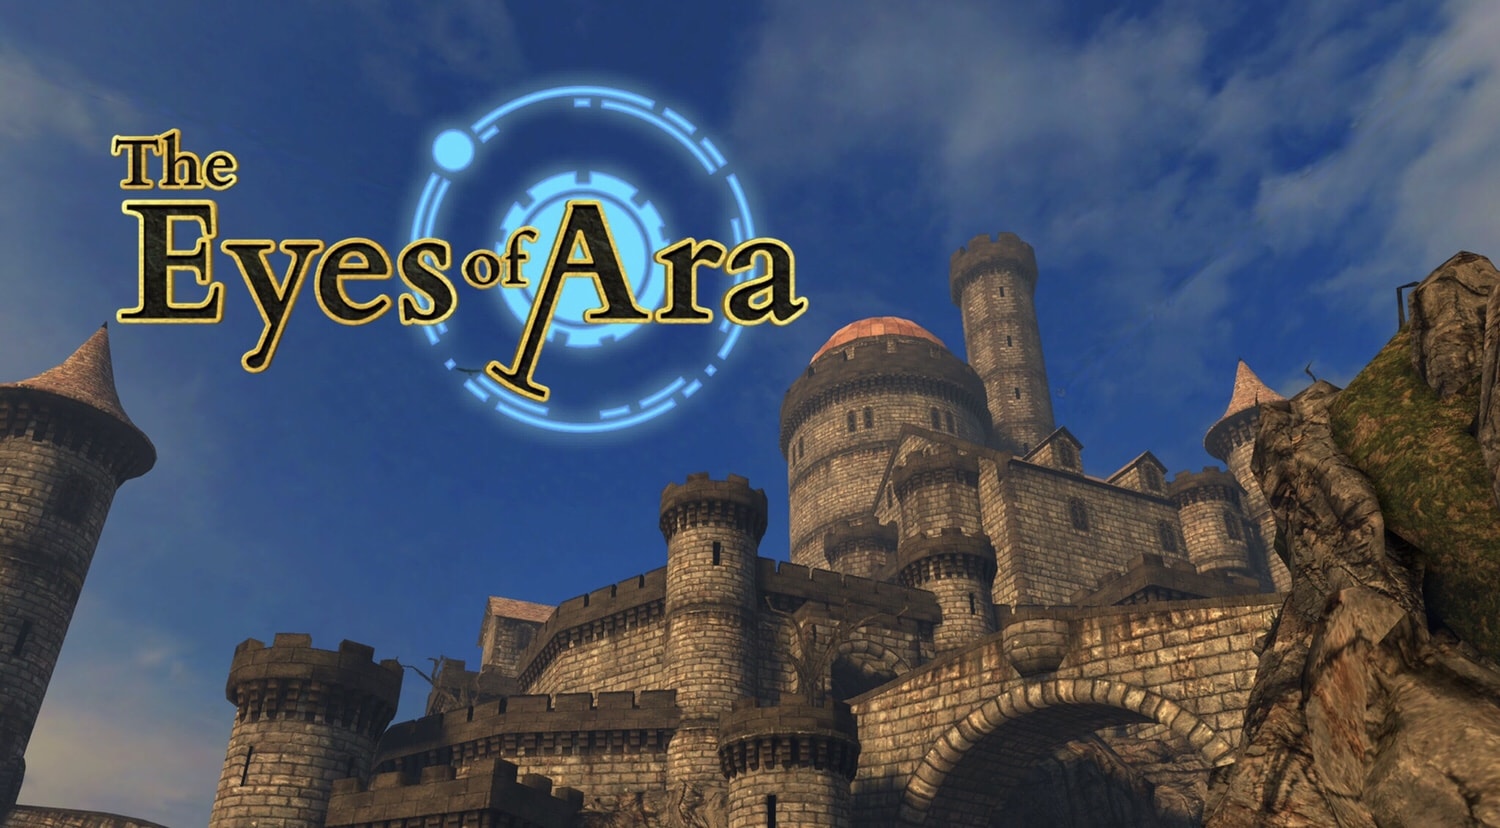 THE EYES OF ARA